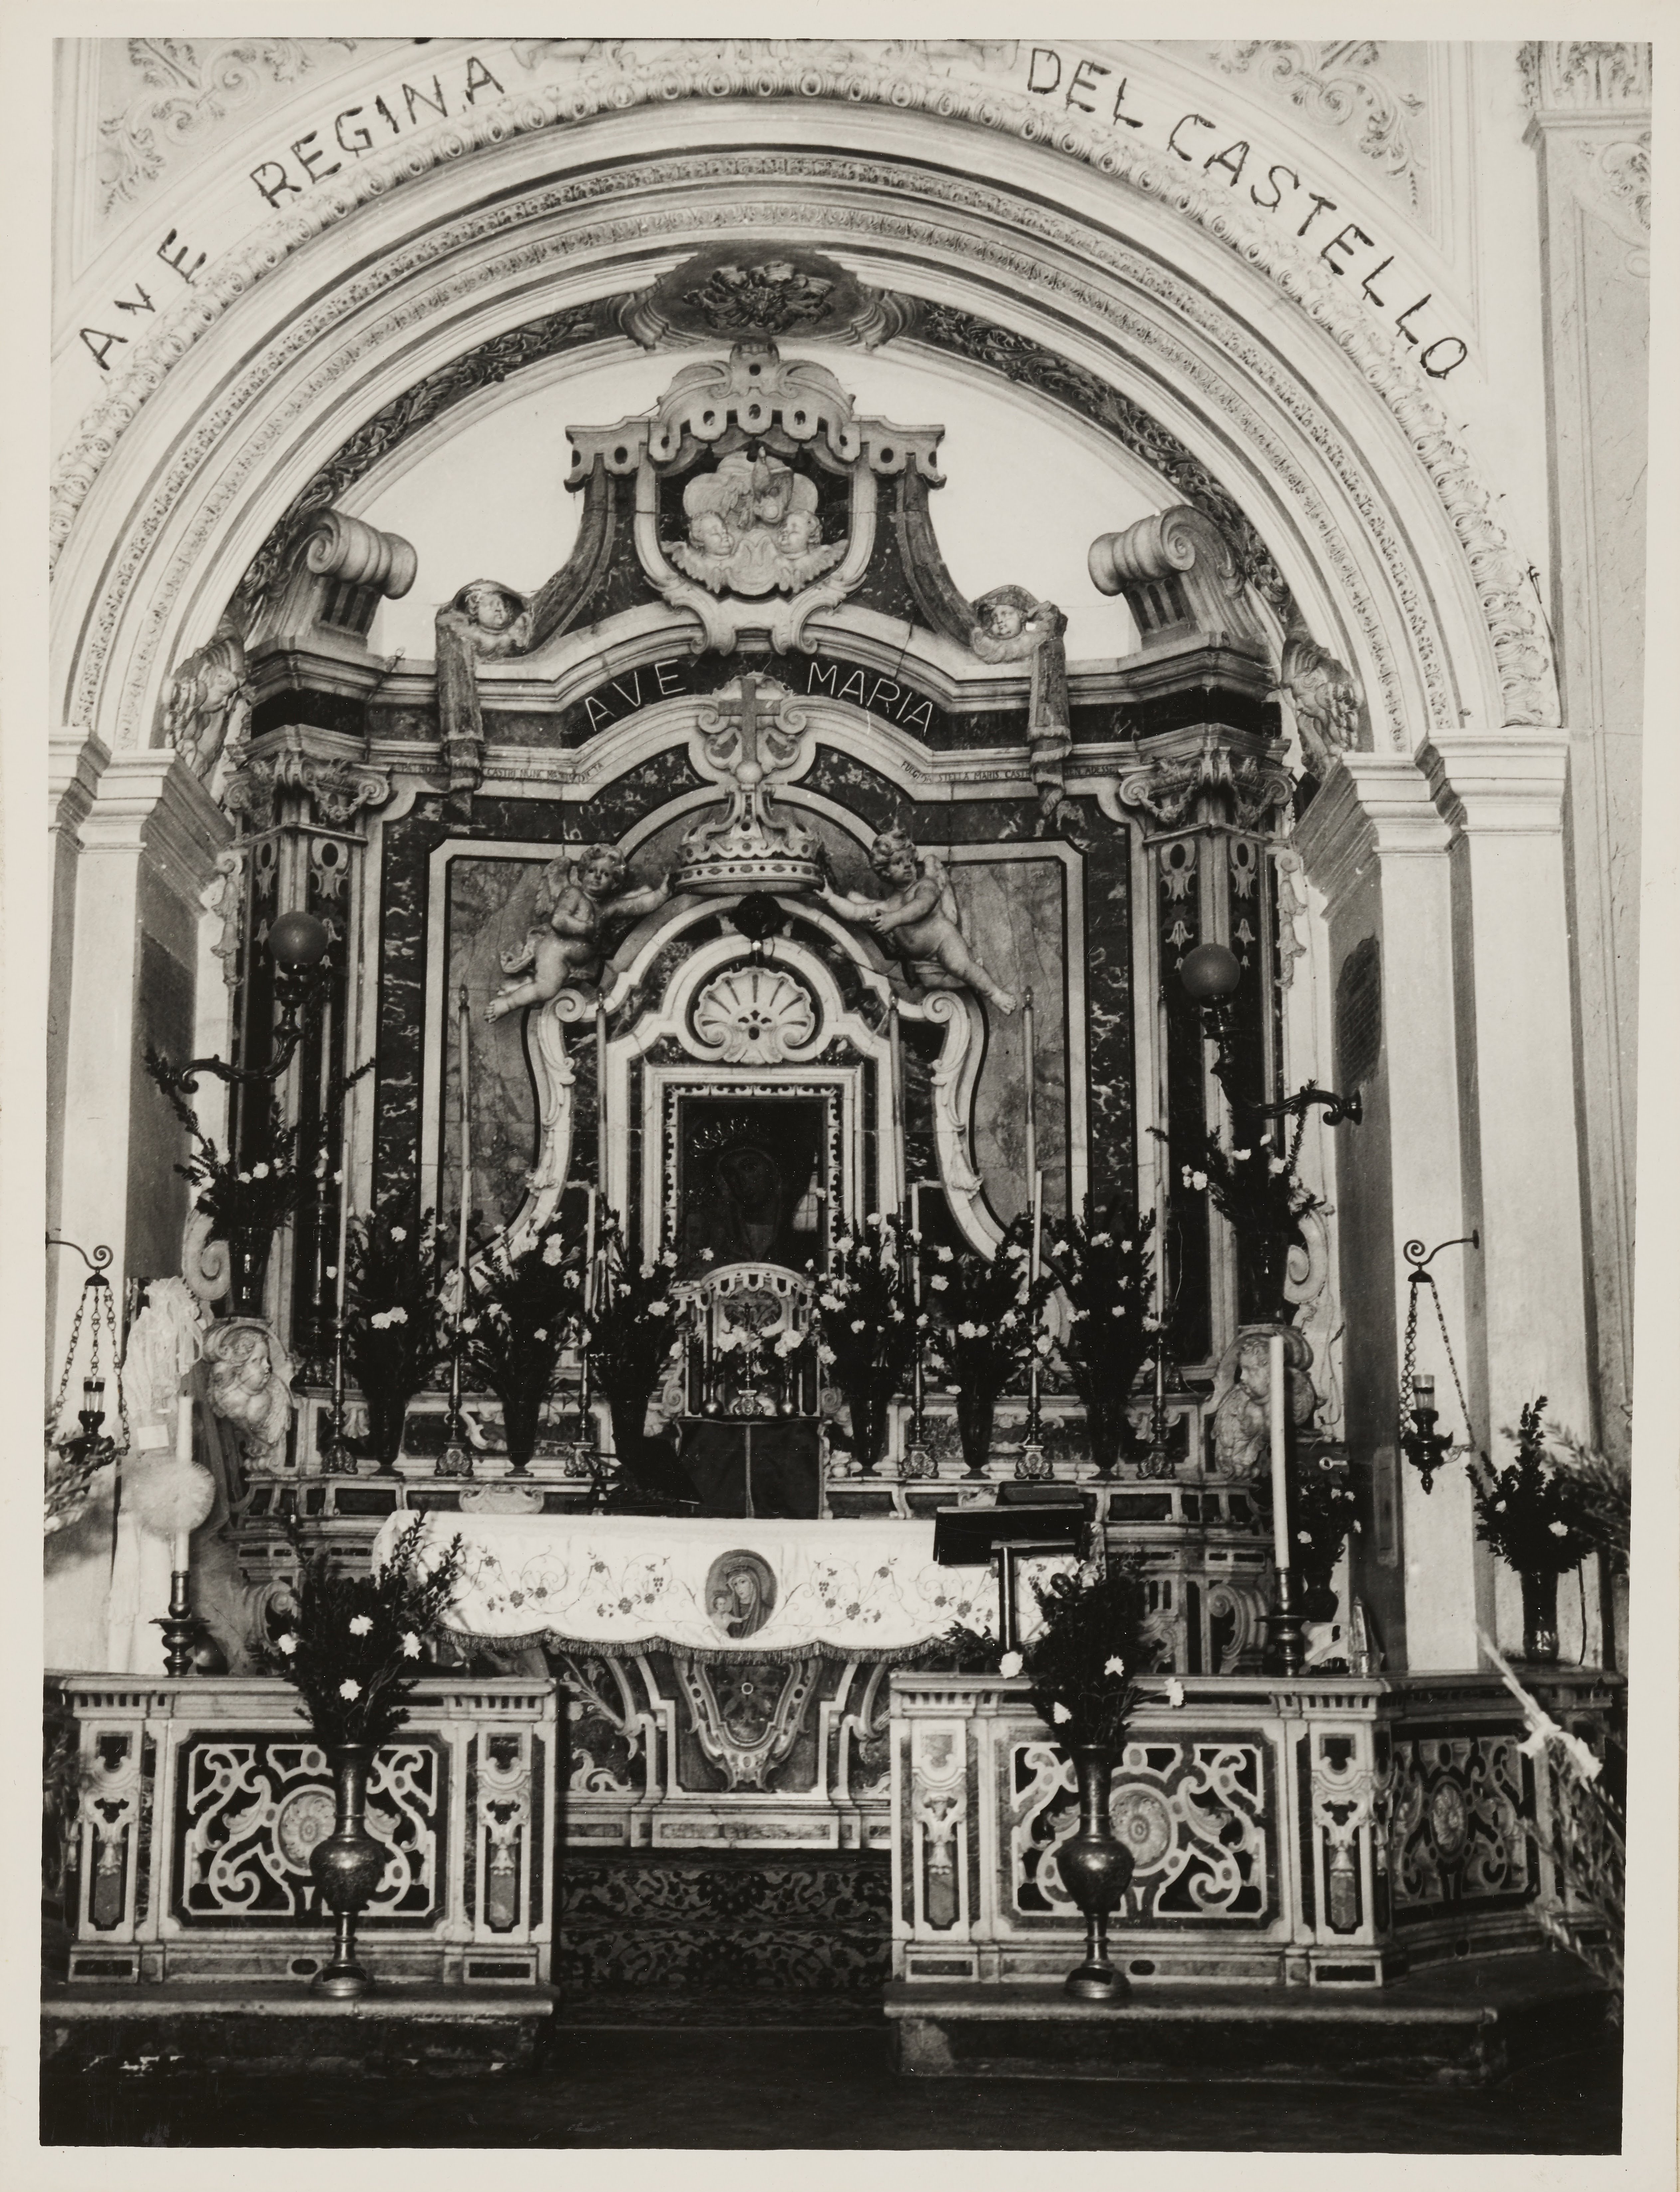 Fotografo non identificato, Castrovillari - Chiesa di S. Maria del Castello, altare e balaustra con cancelletto, 1951-1975, gelatina ai sali d'argento, MPI146095